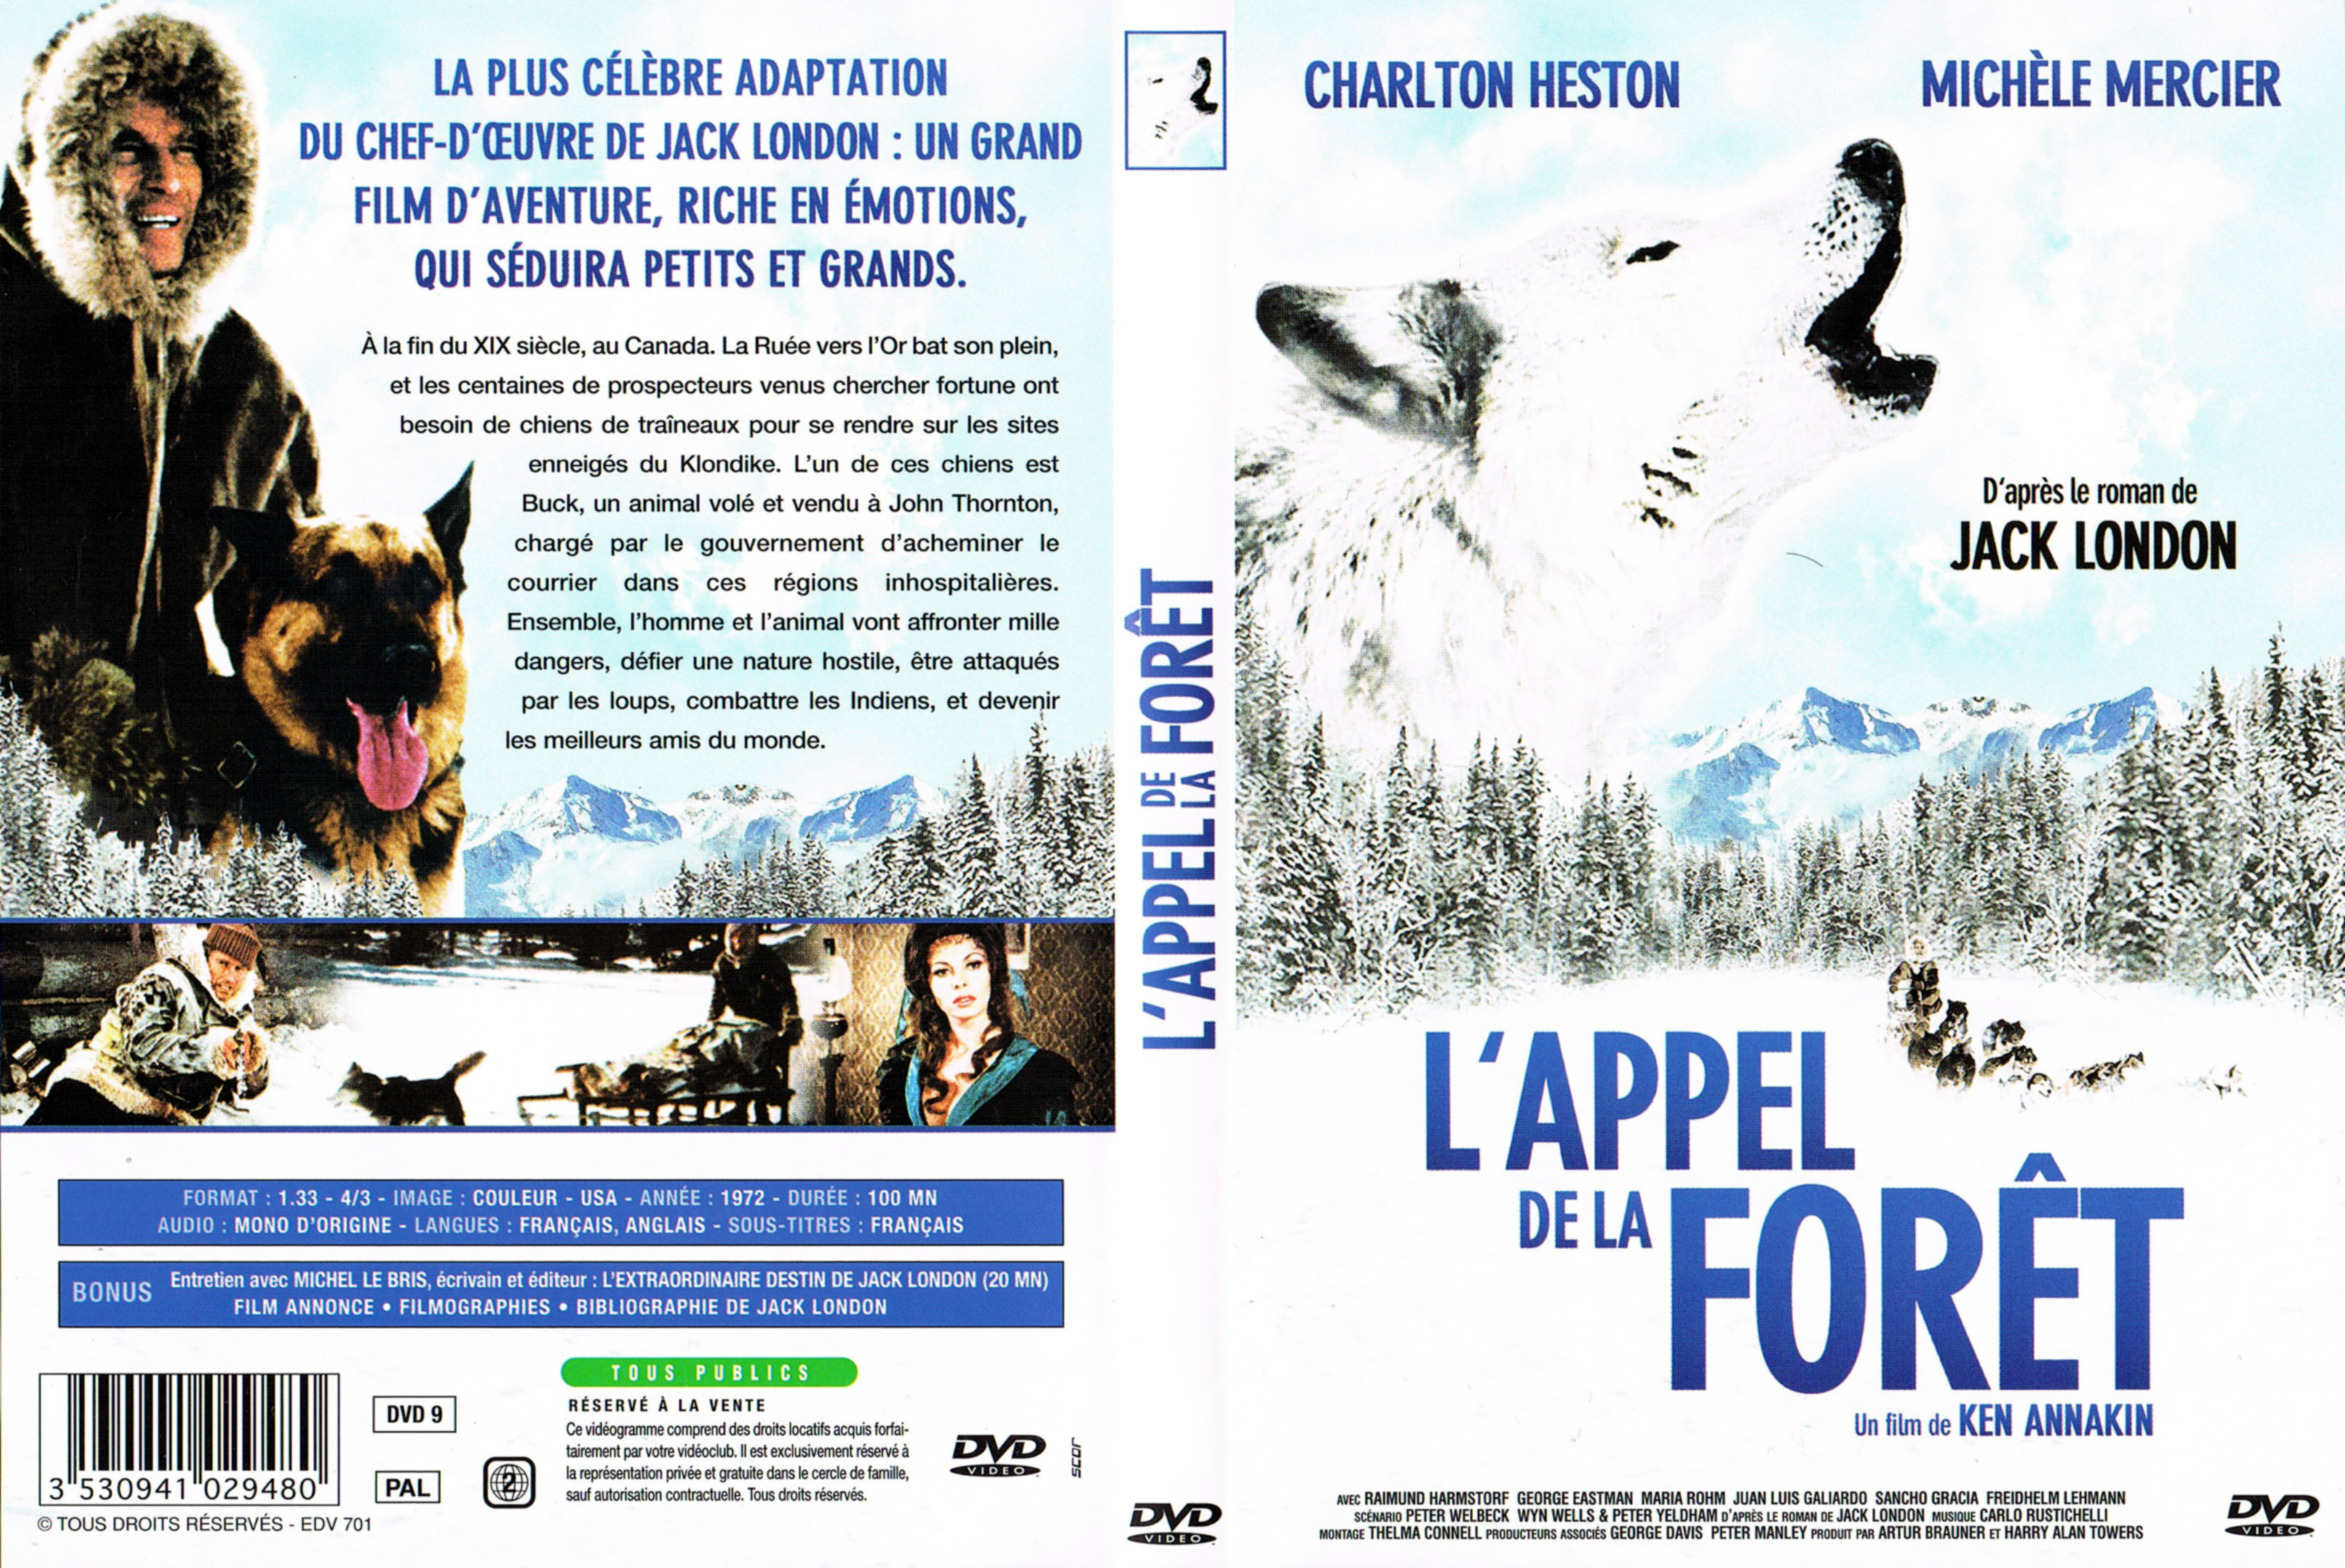 Jaquette DVD de L'appel de la foret - Cinéma Passion